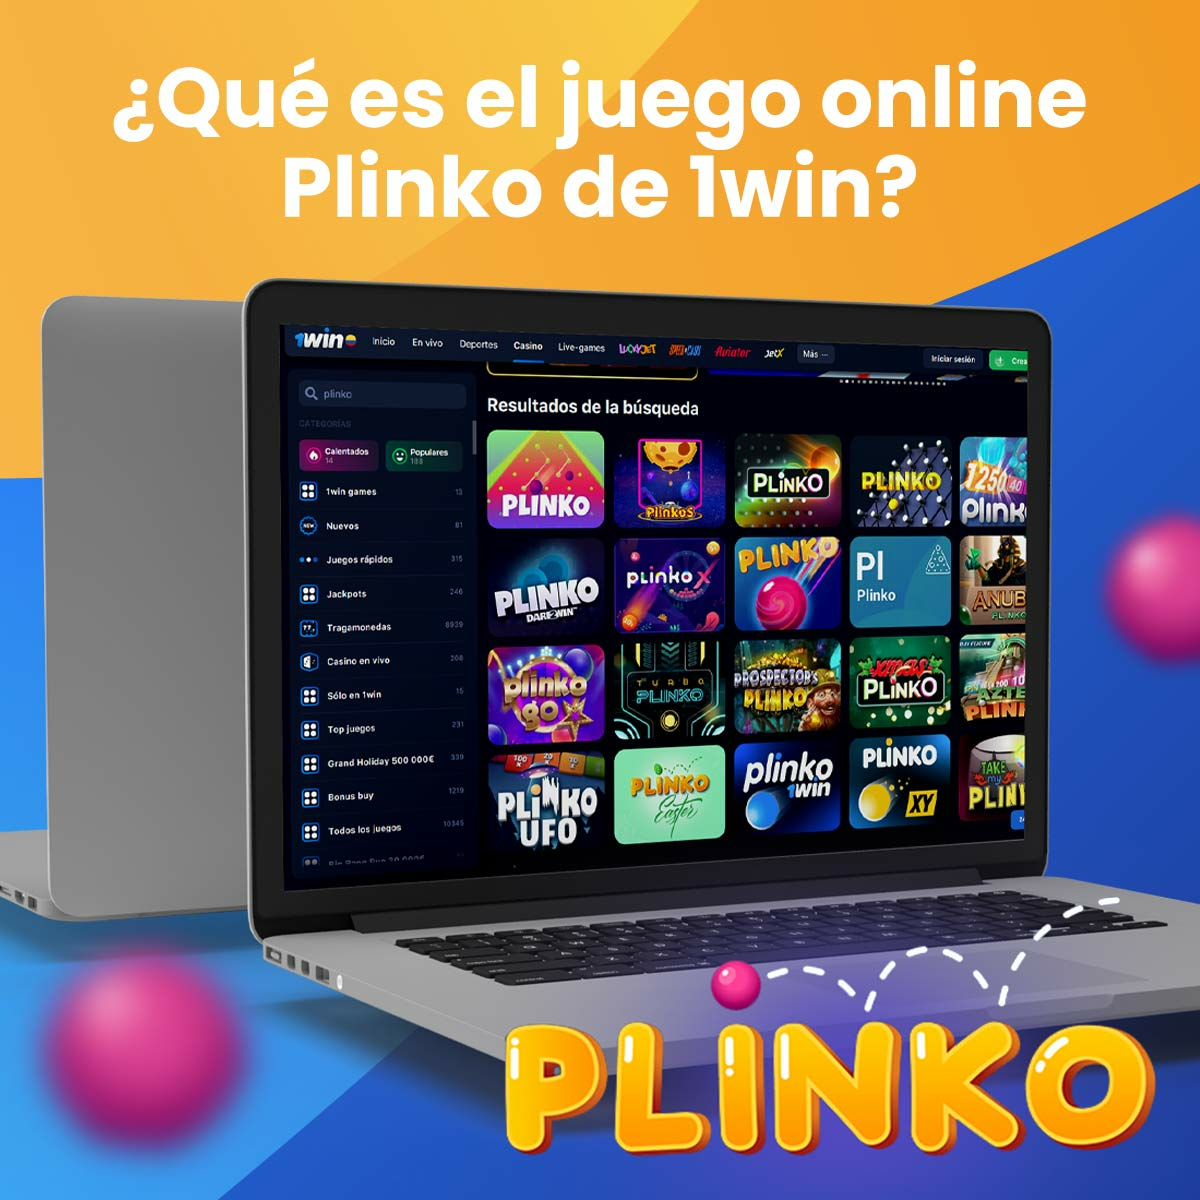 Reseña completa del juego Plinko 1Win en Colombia